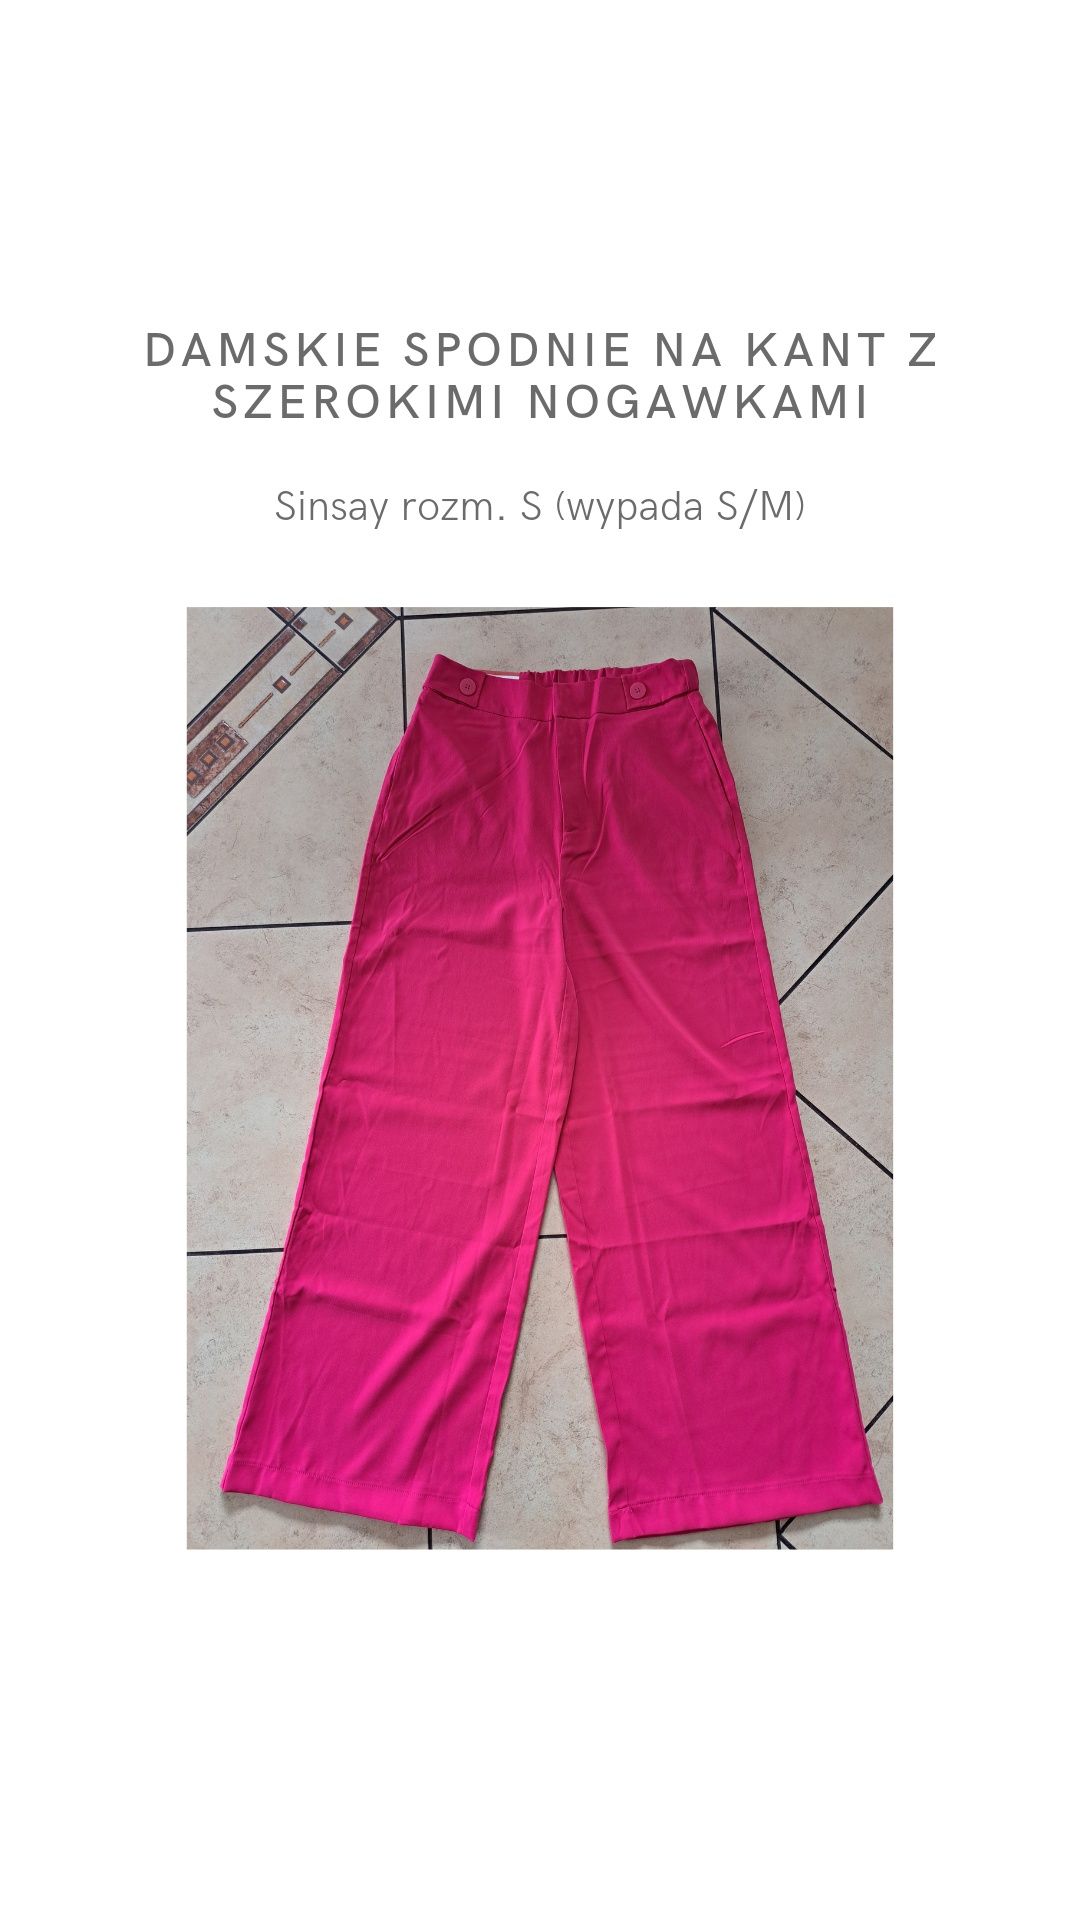 Damskie spodnie na kant z szerokimi nogawkami Sinsay rozm. S